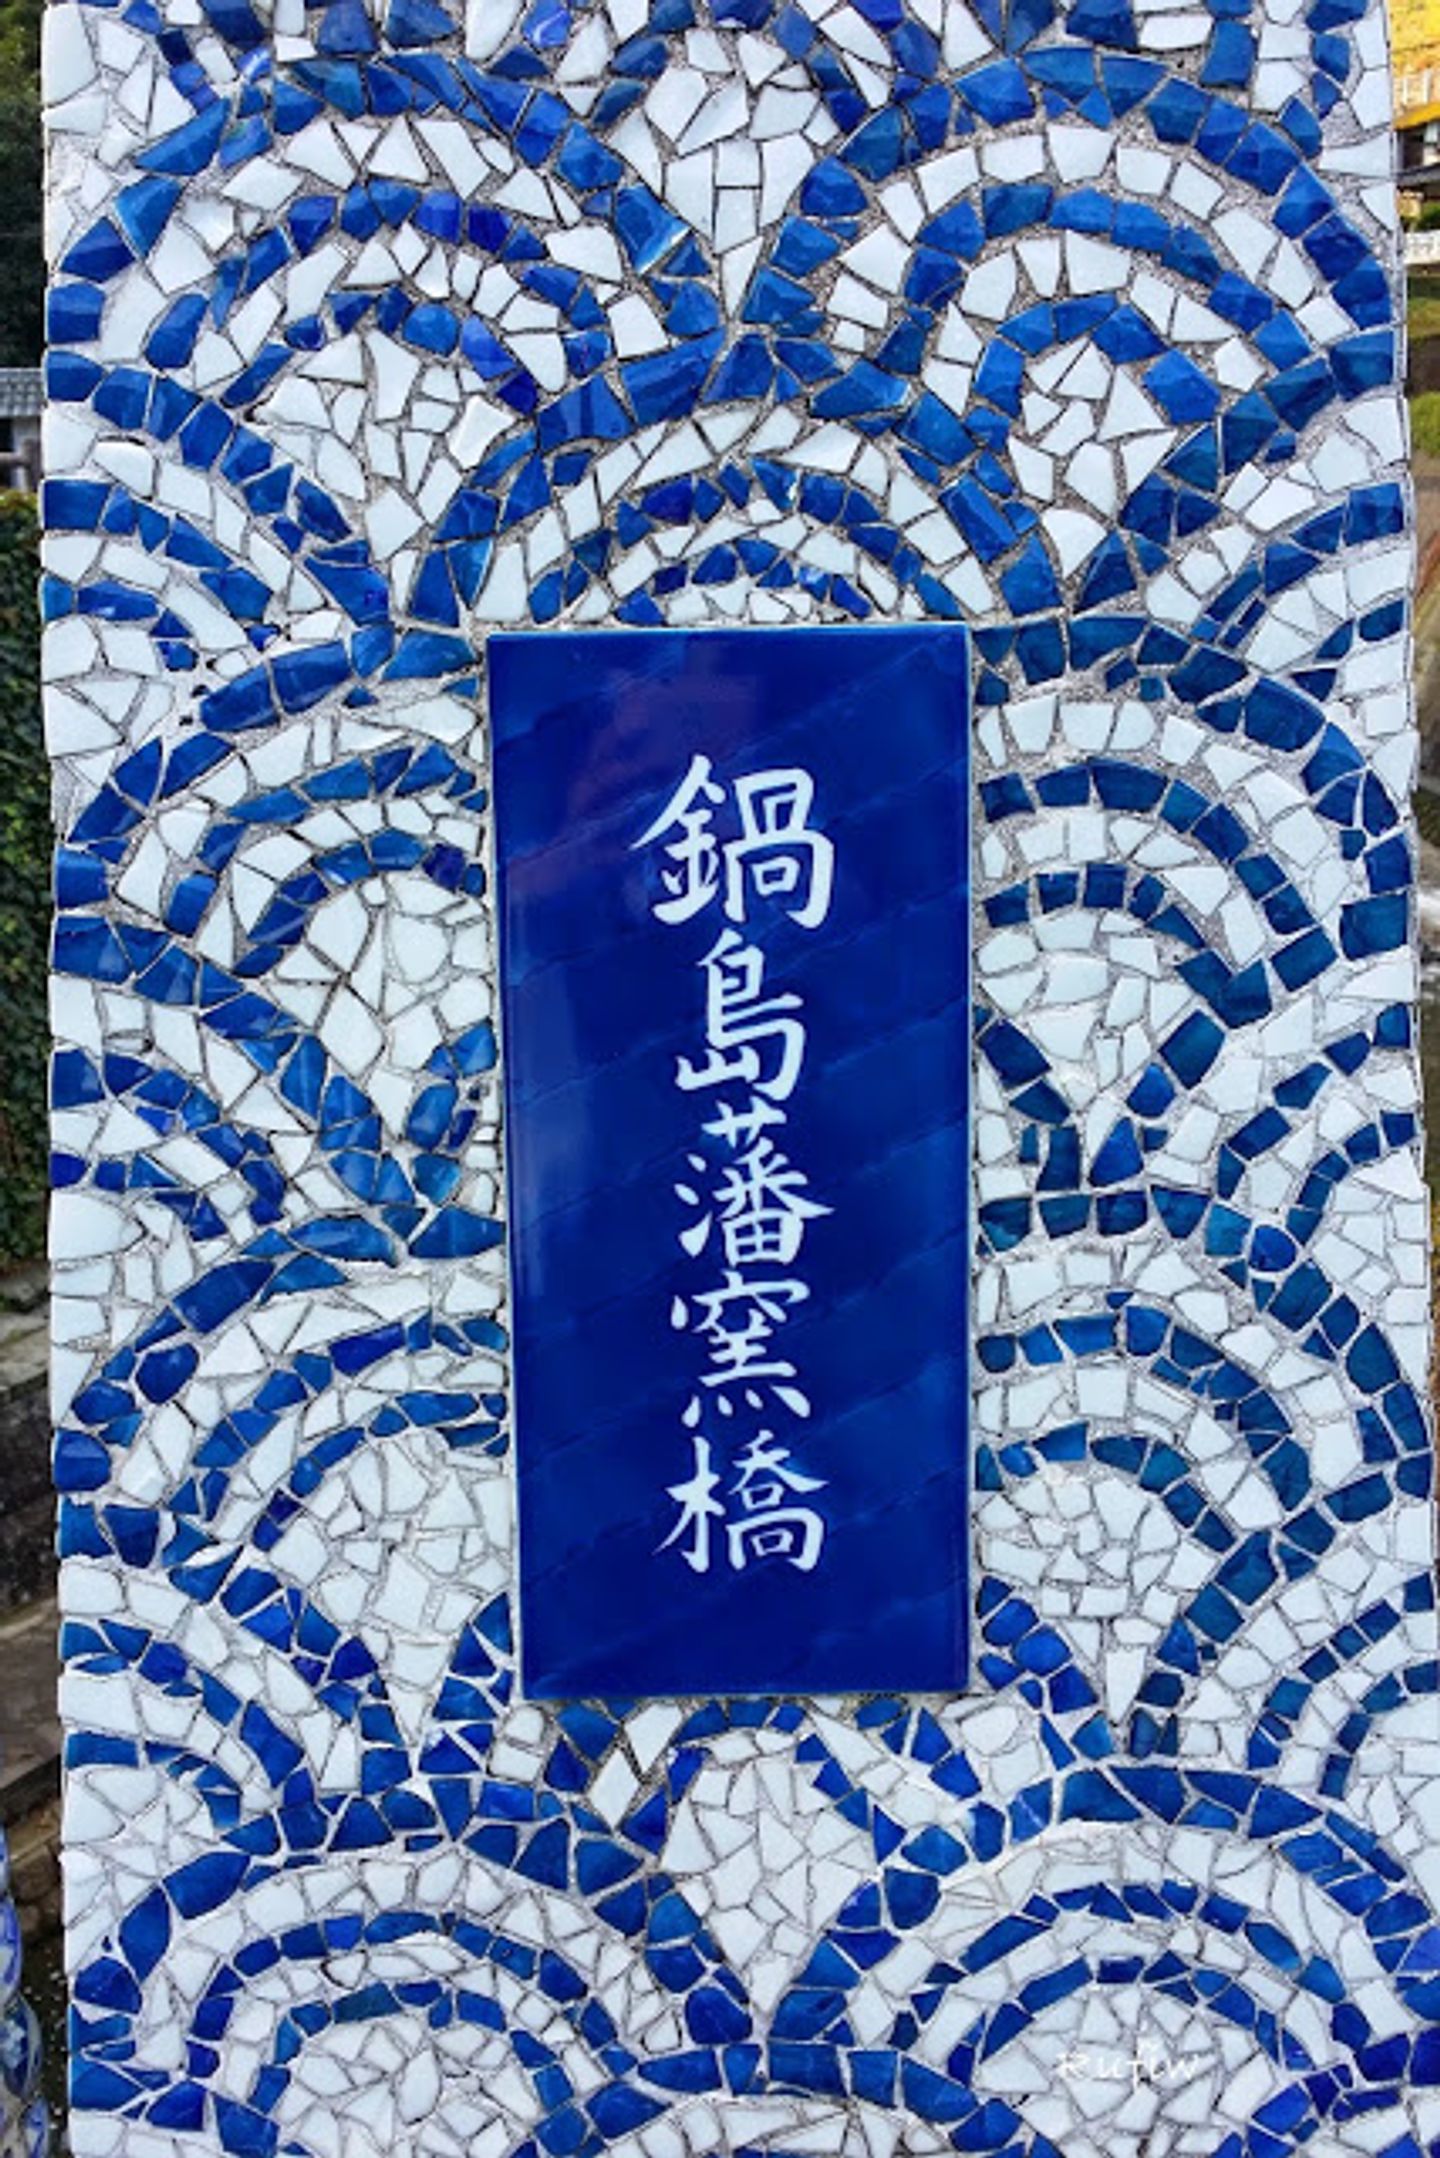 購買伊萬里燒好去處~大川內山・鍋島藩窯公園| 日本| 九州| 旅行酒吧